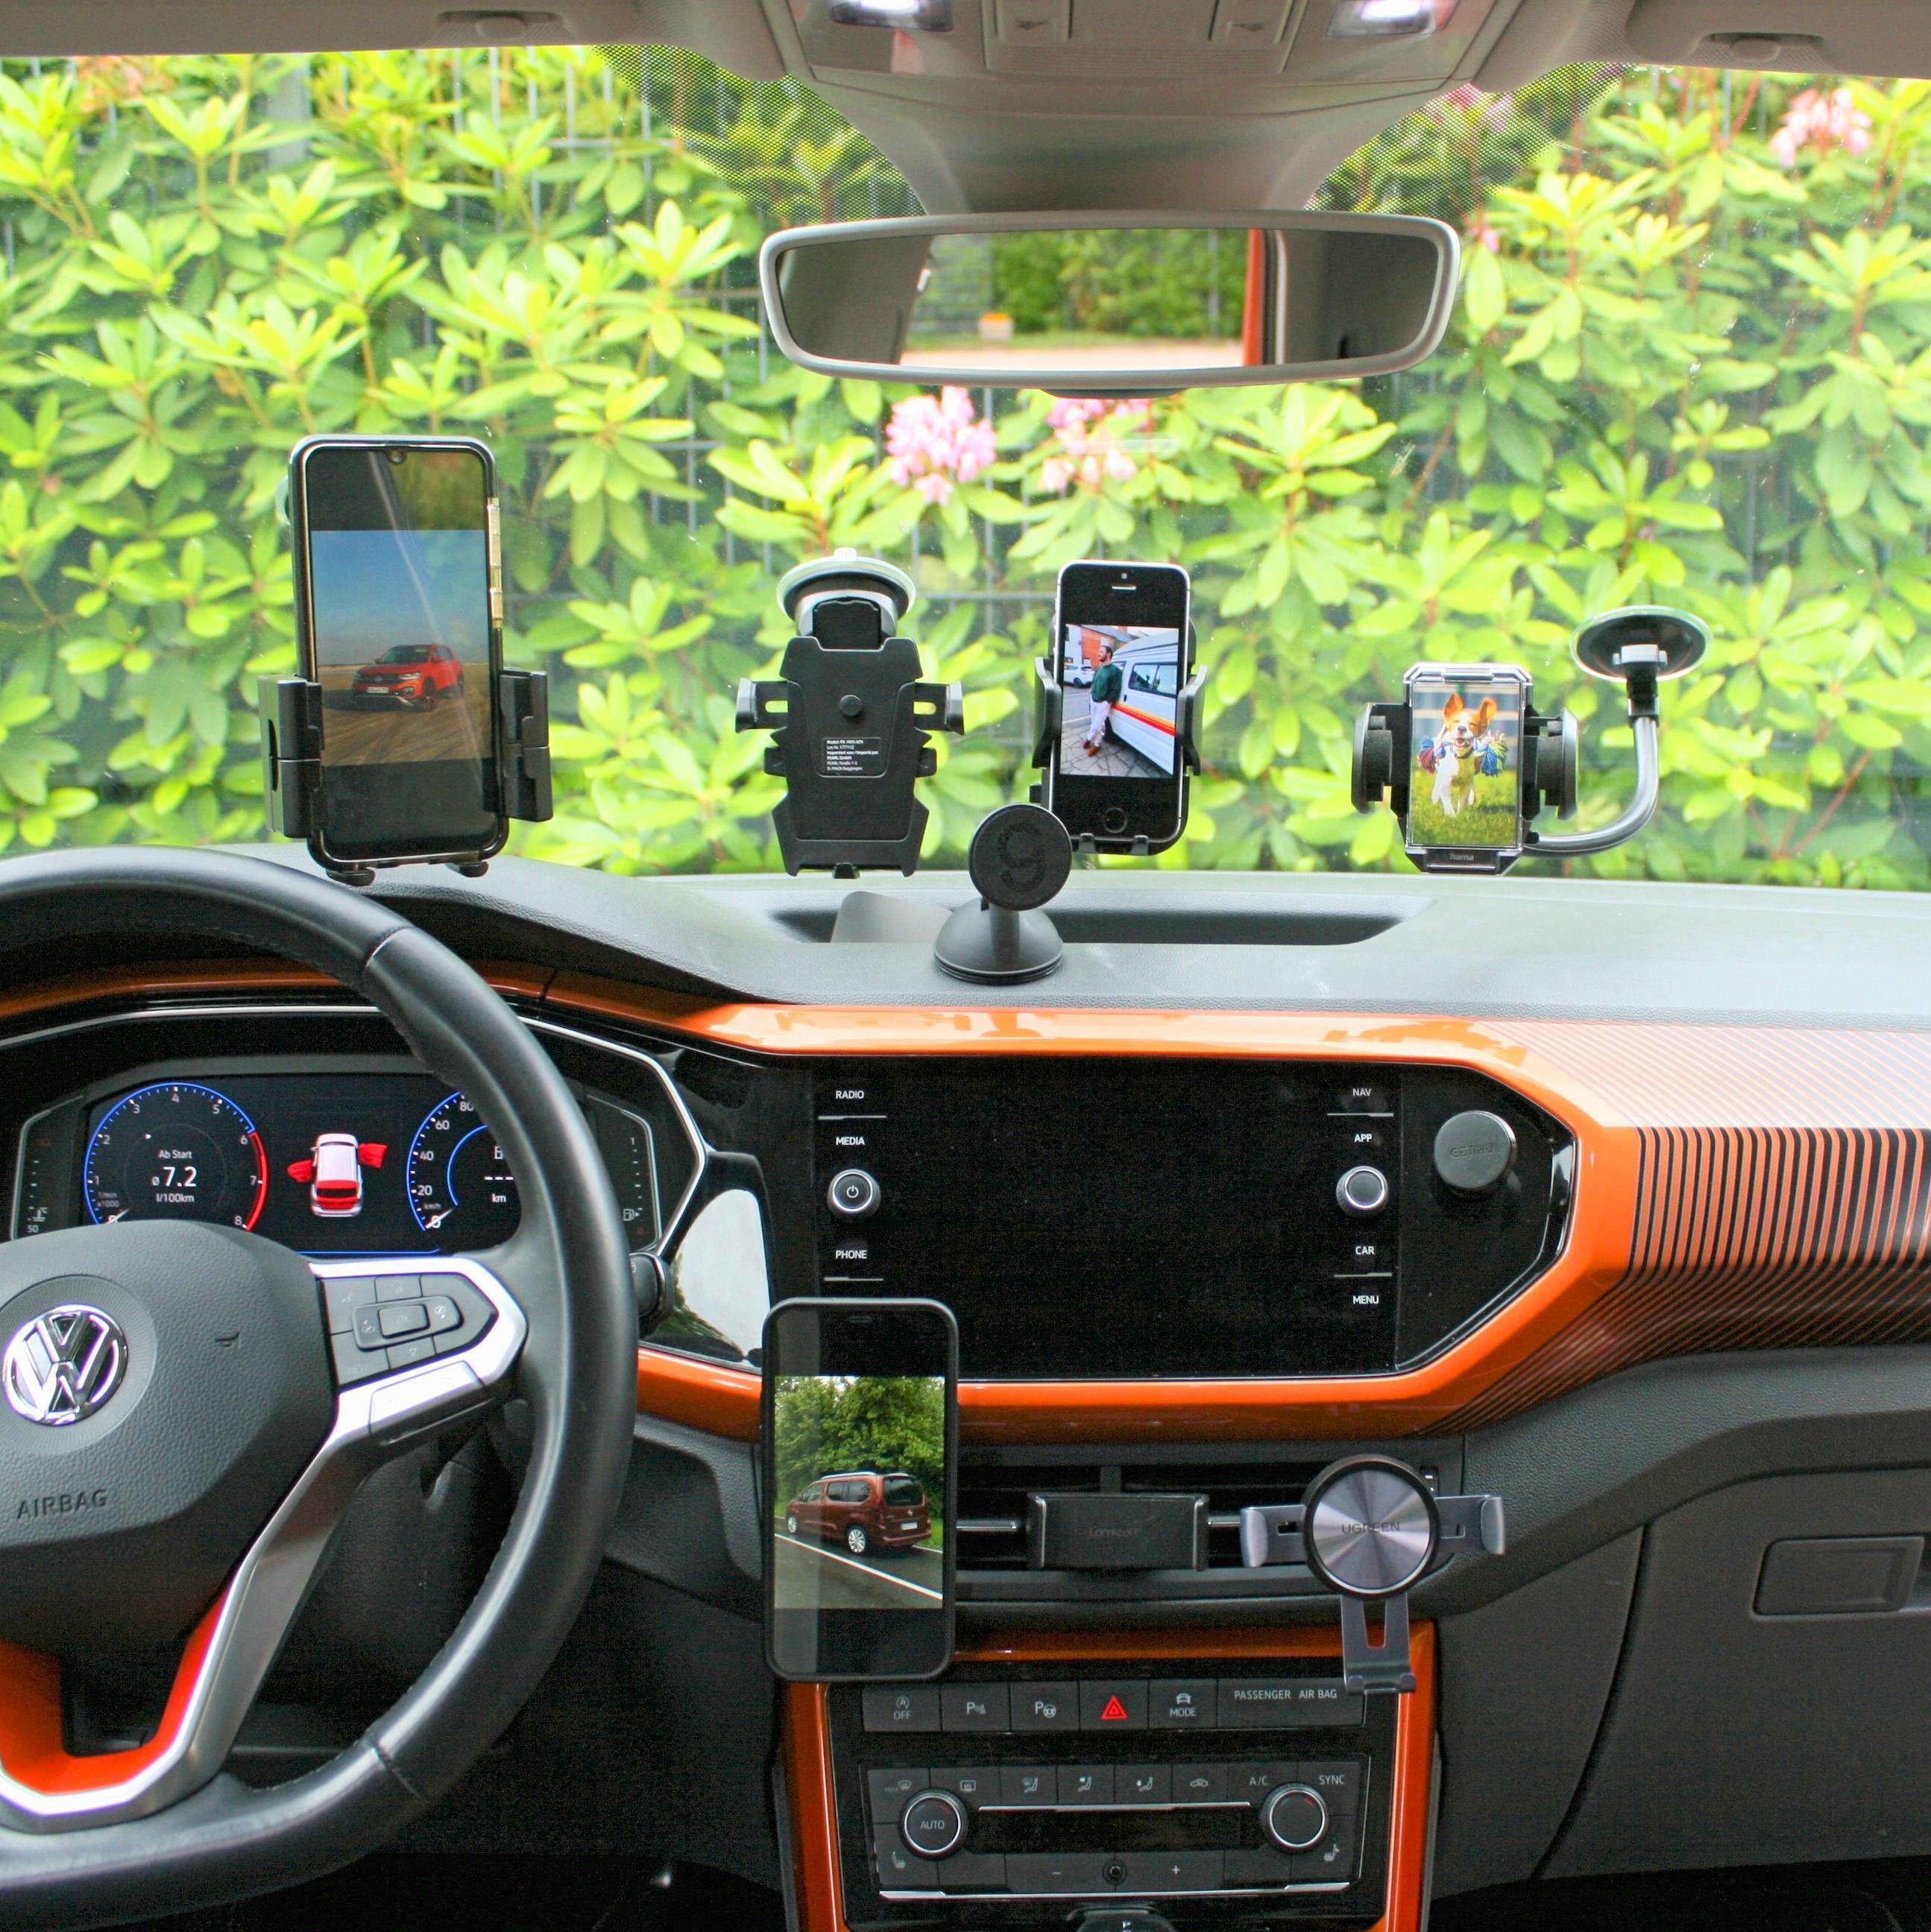 Hama Smartphone-Halterung »Auto Handyhalterung Magnet für